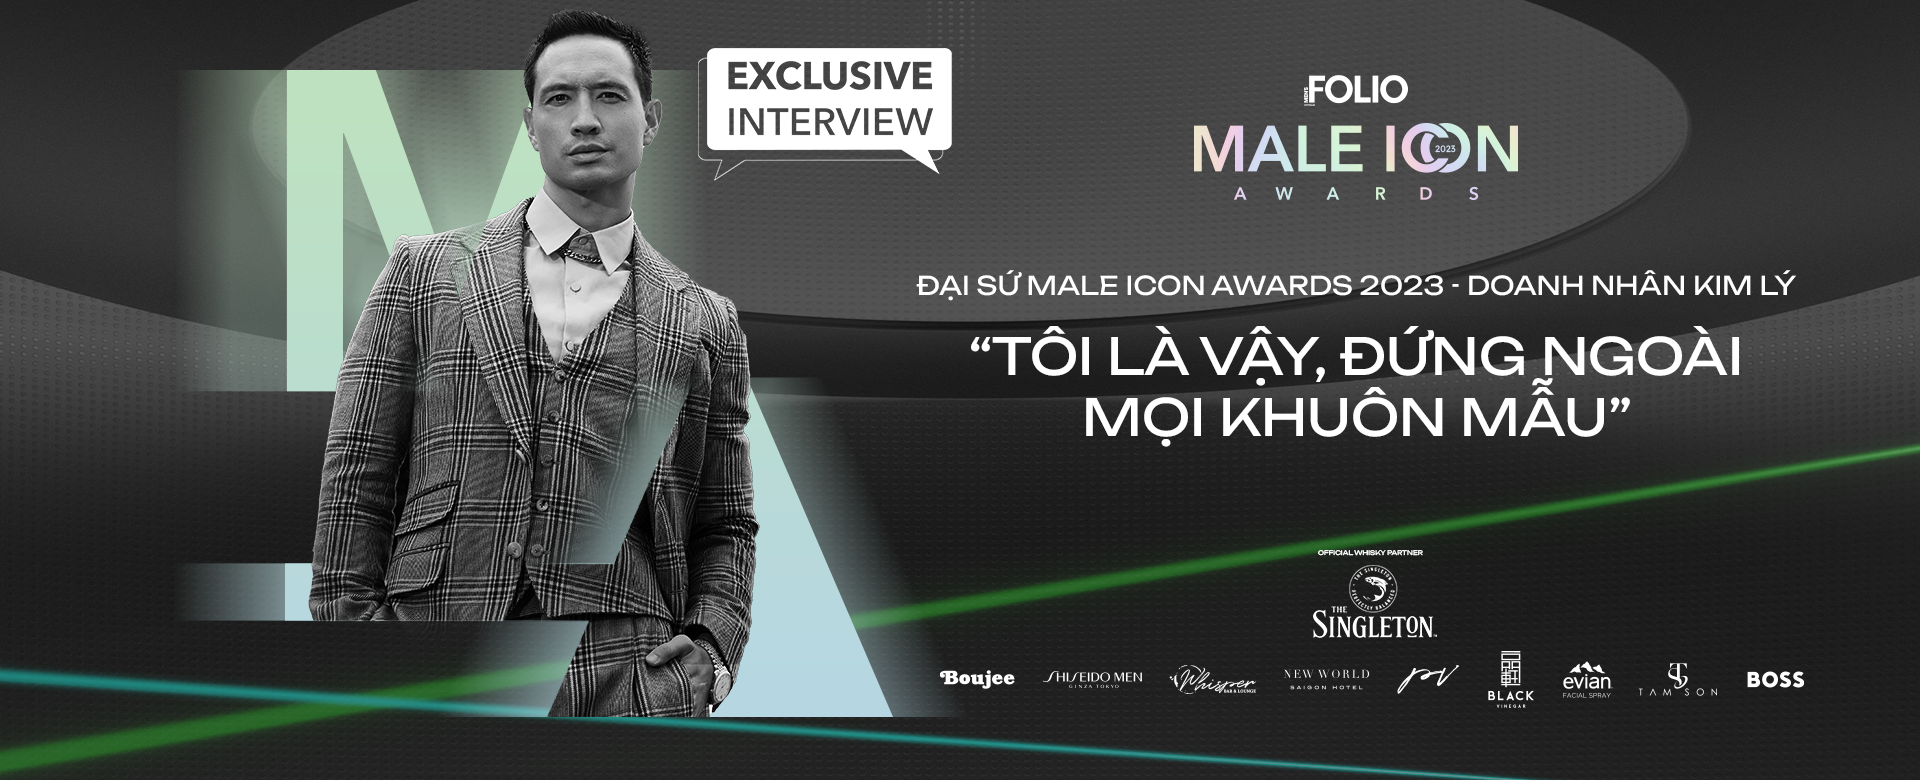 Đại sứ Male Icon Awards 2023 – Doanh nhân Kim Lý: “Tôi là vậy, đứng ngoài mọi khuôn mẫu”